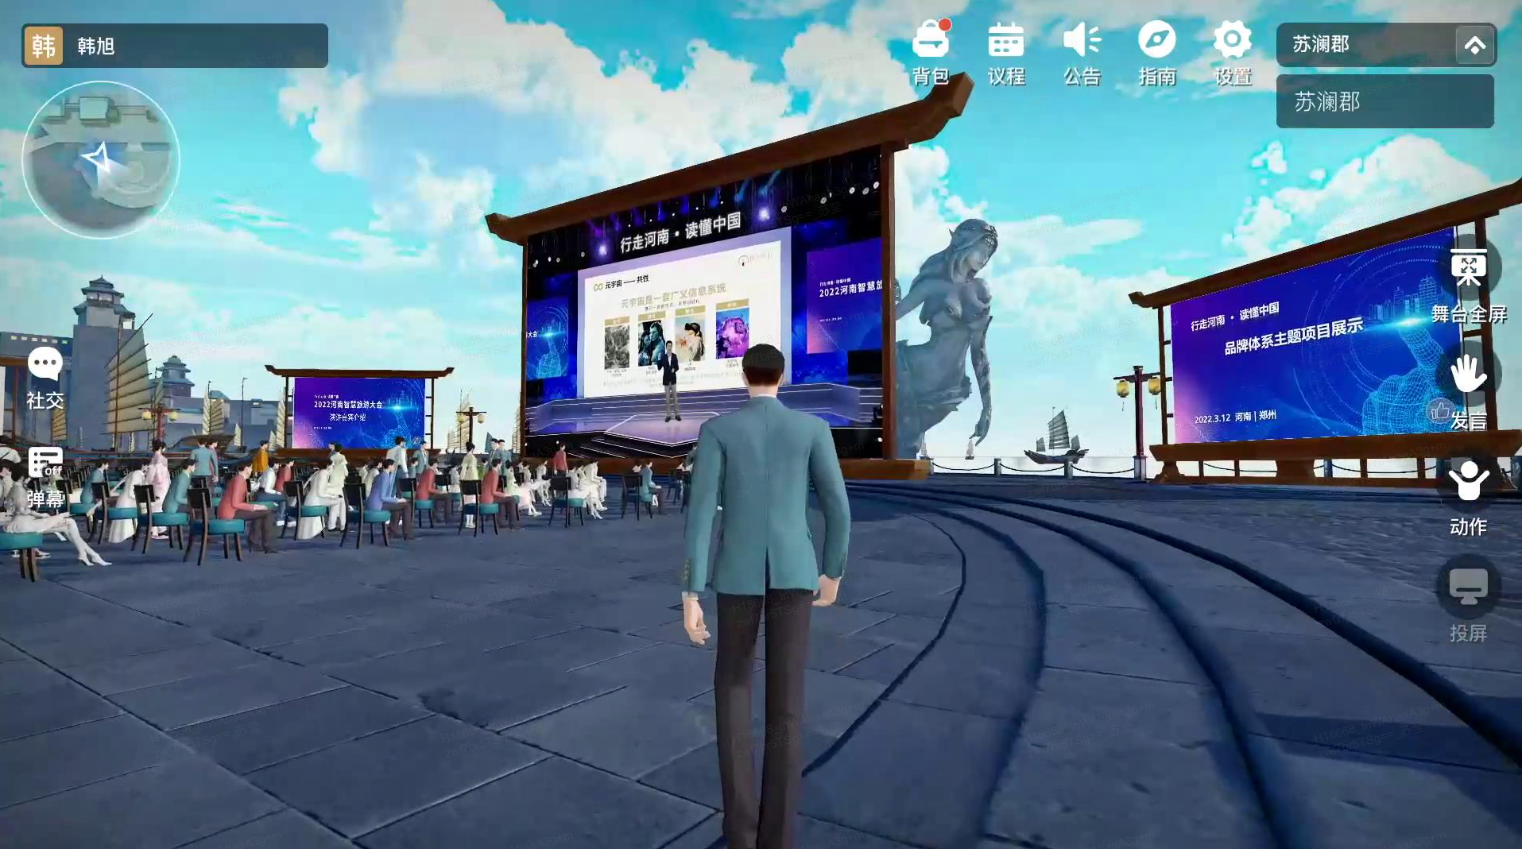 这是一张游戏内截图，显示一个角色背对镜头站在广场上，前方有观众和一个大屏幕正在展示内容。